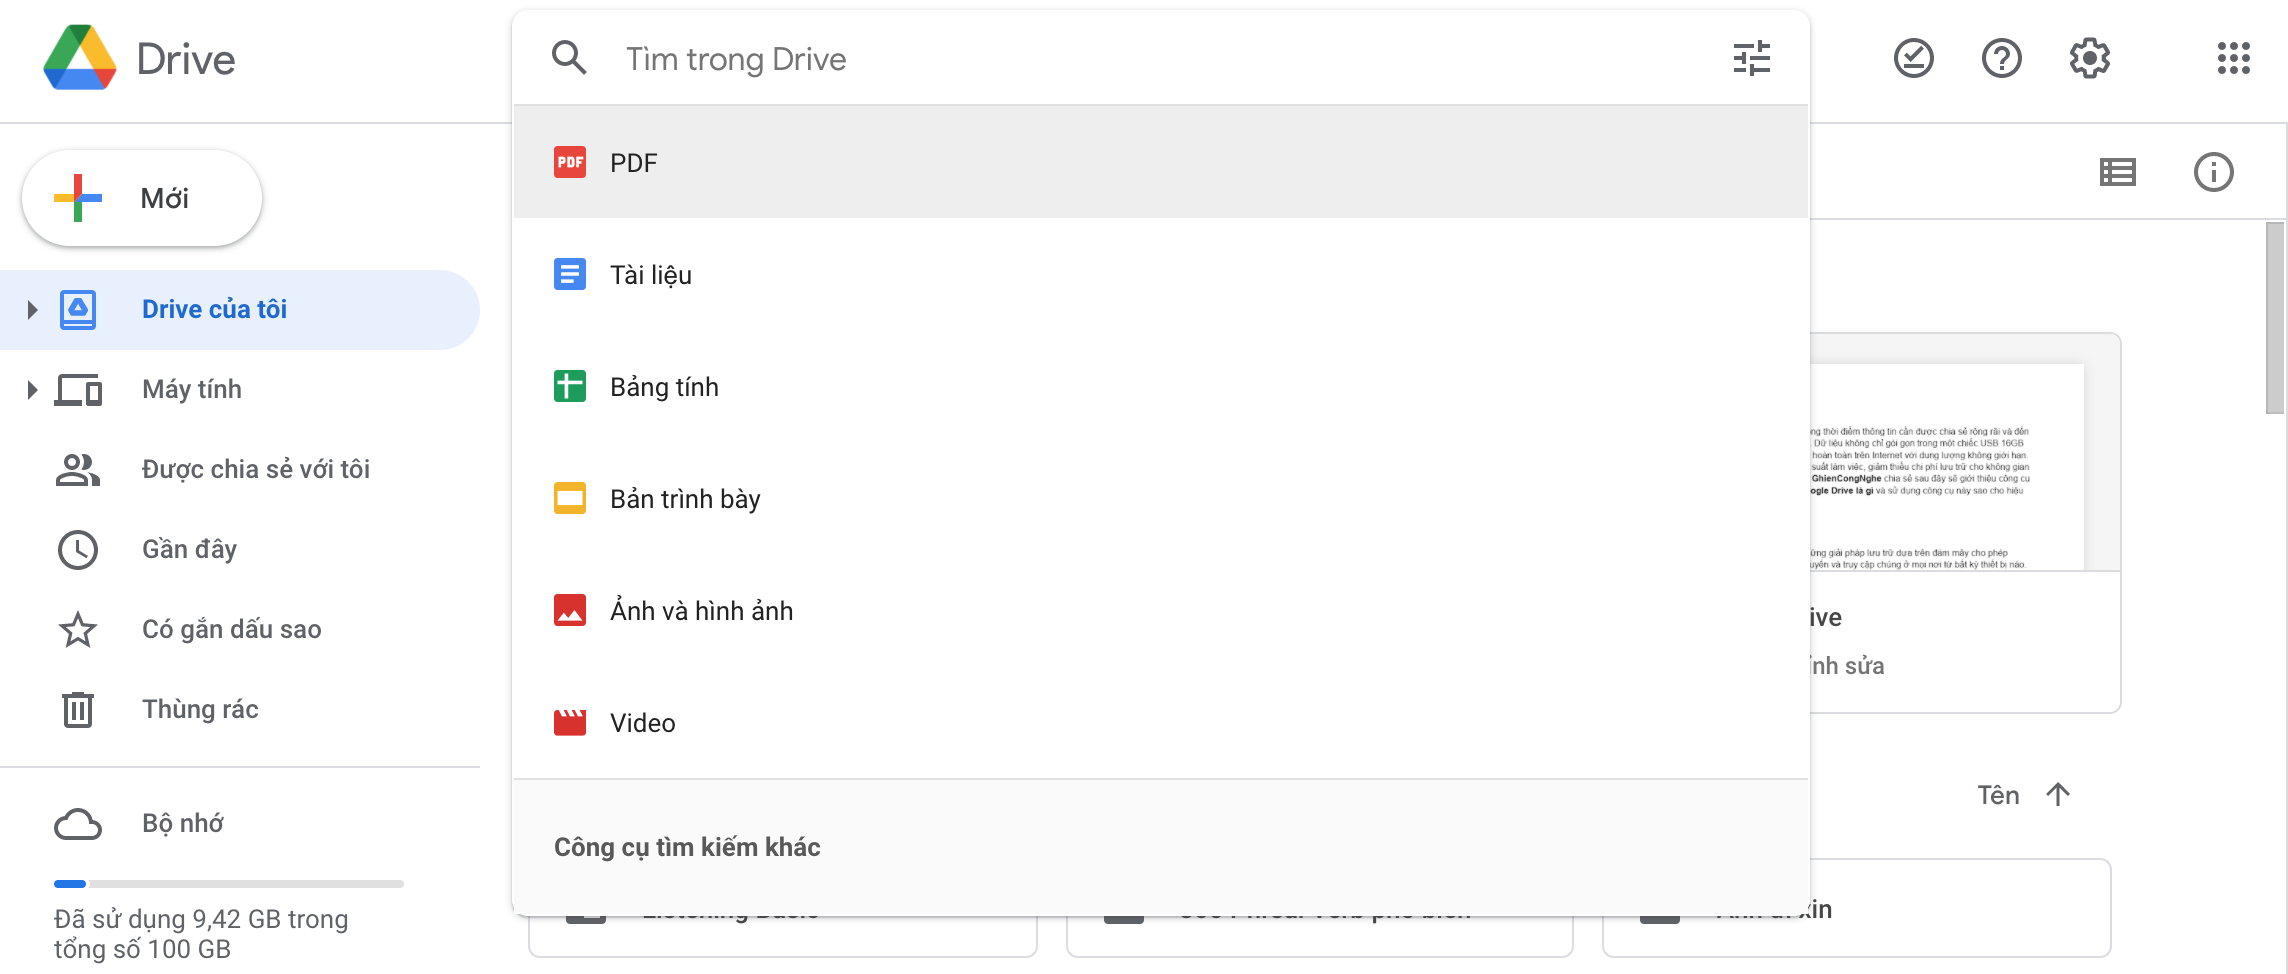 Google Drive là gì? Cách sử dụng Google Drive đơn giản cho 1 người mới bắt đầu 2